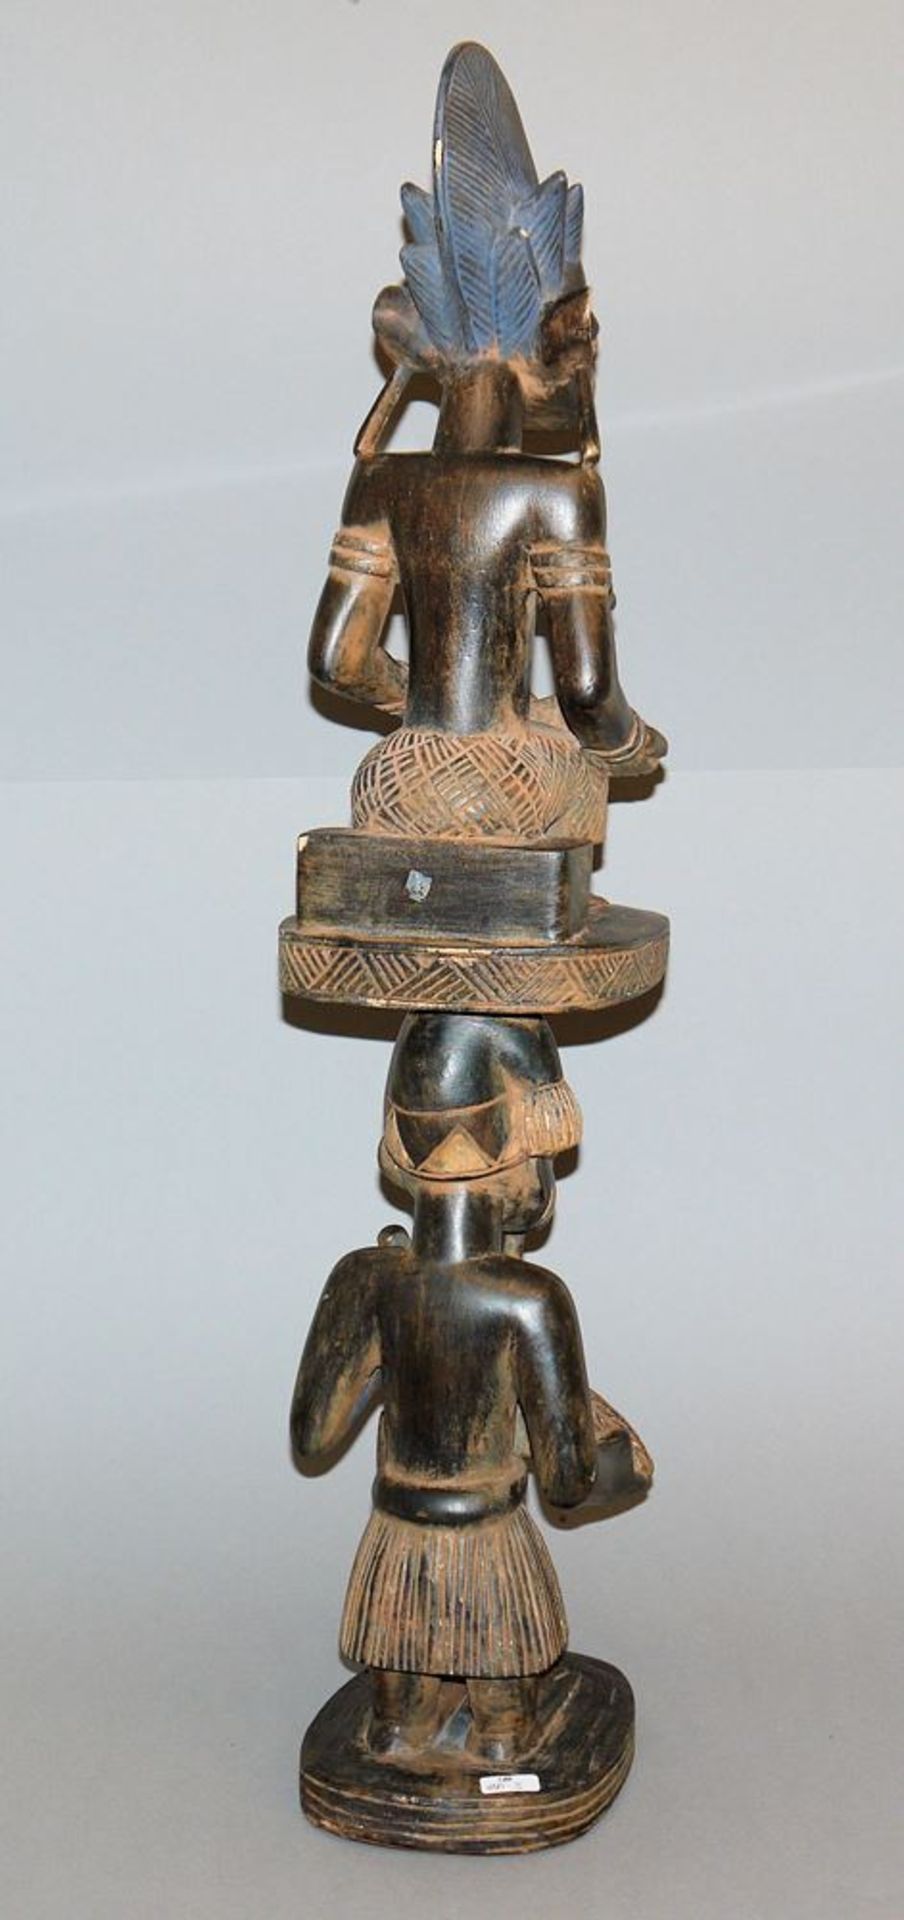 Figurenpaar mit Fruchtbarkeitssymbolik der Yoruba, Nigeria - Image 2 of 2